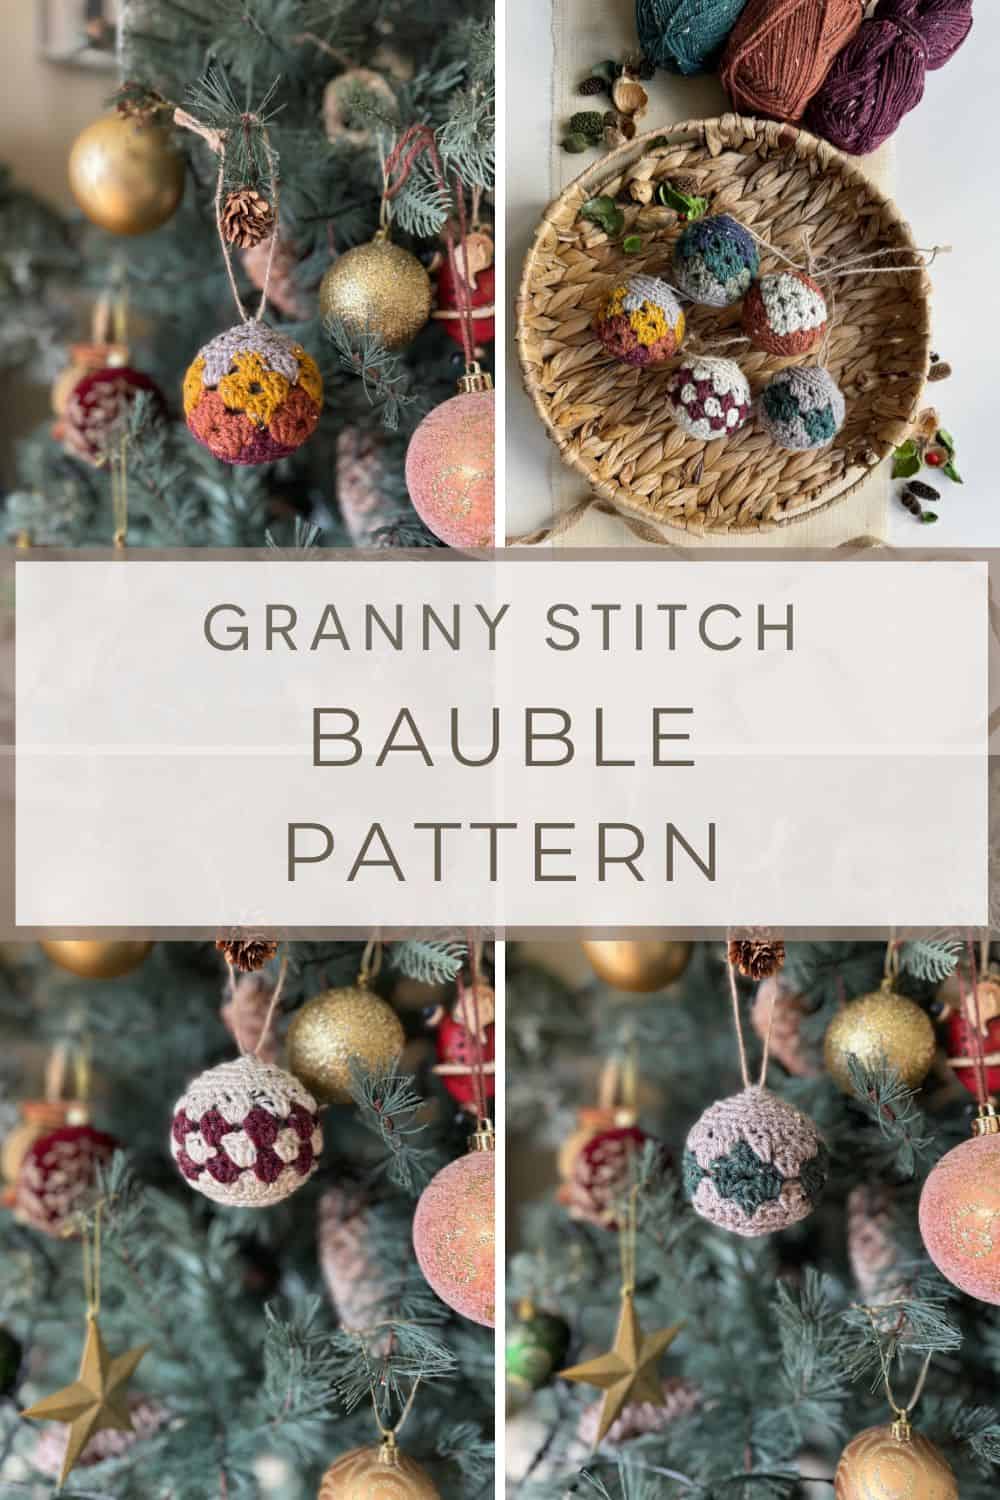 Granny stitch bumble pattern.